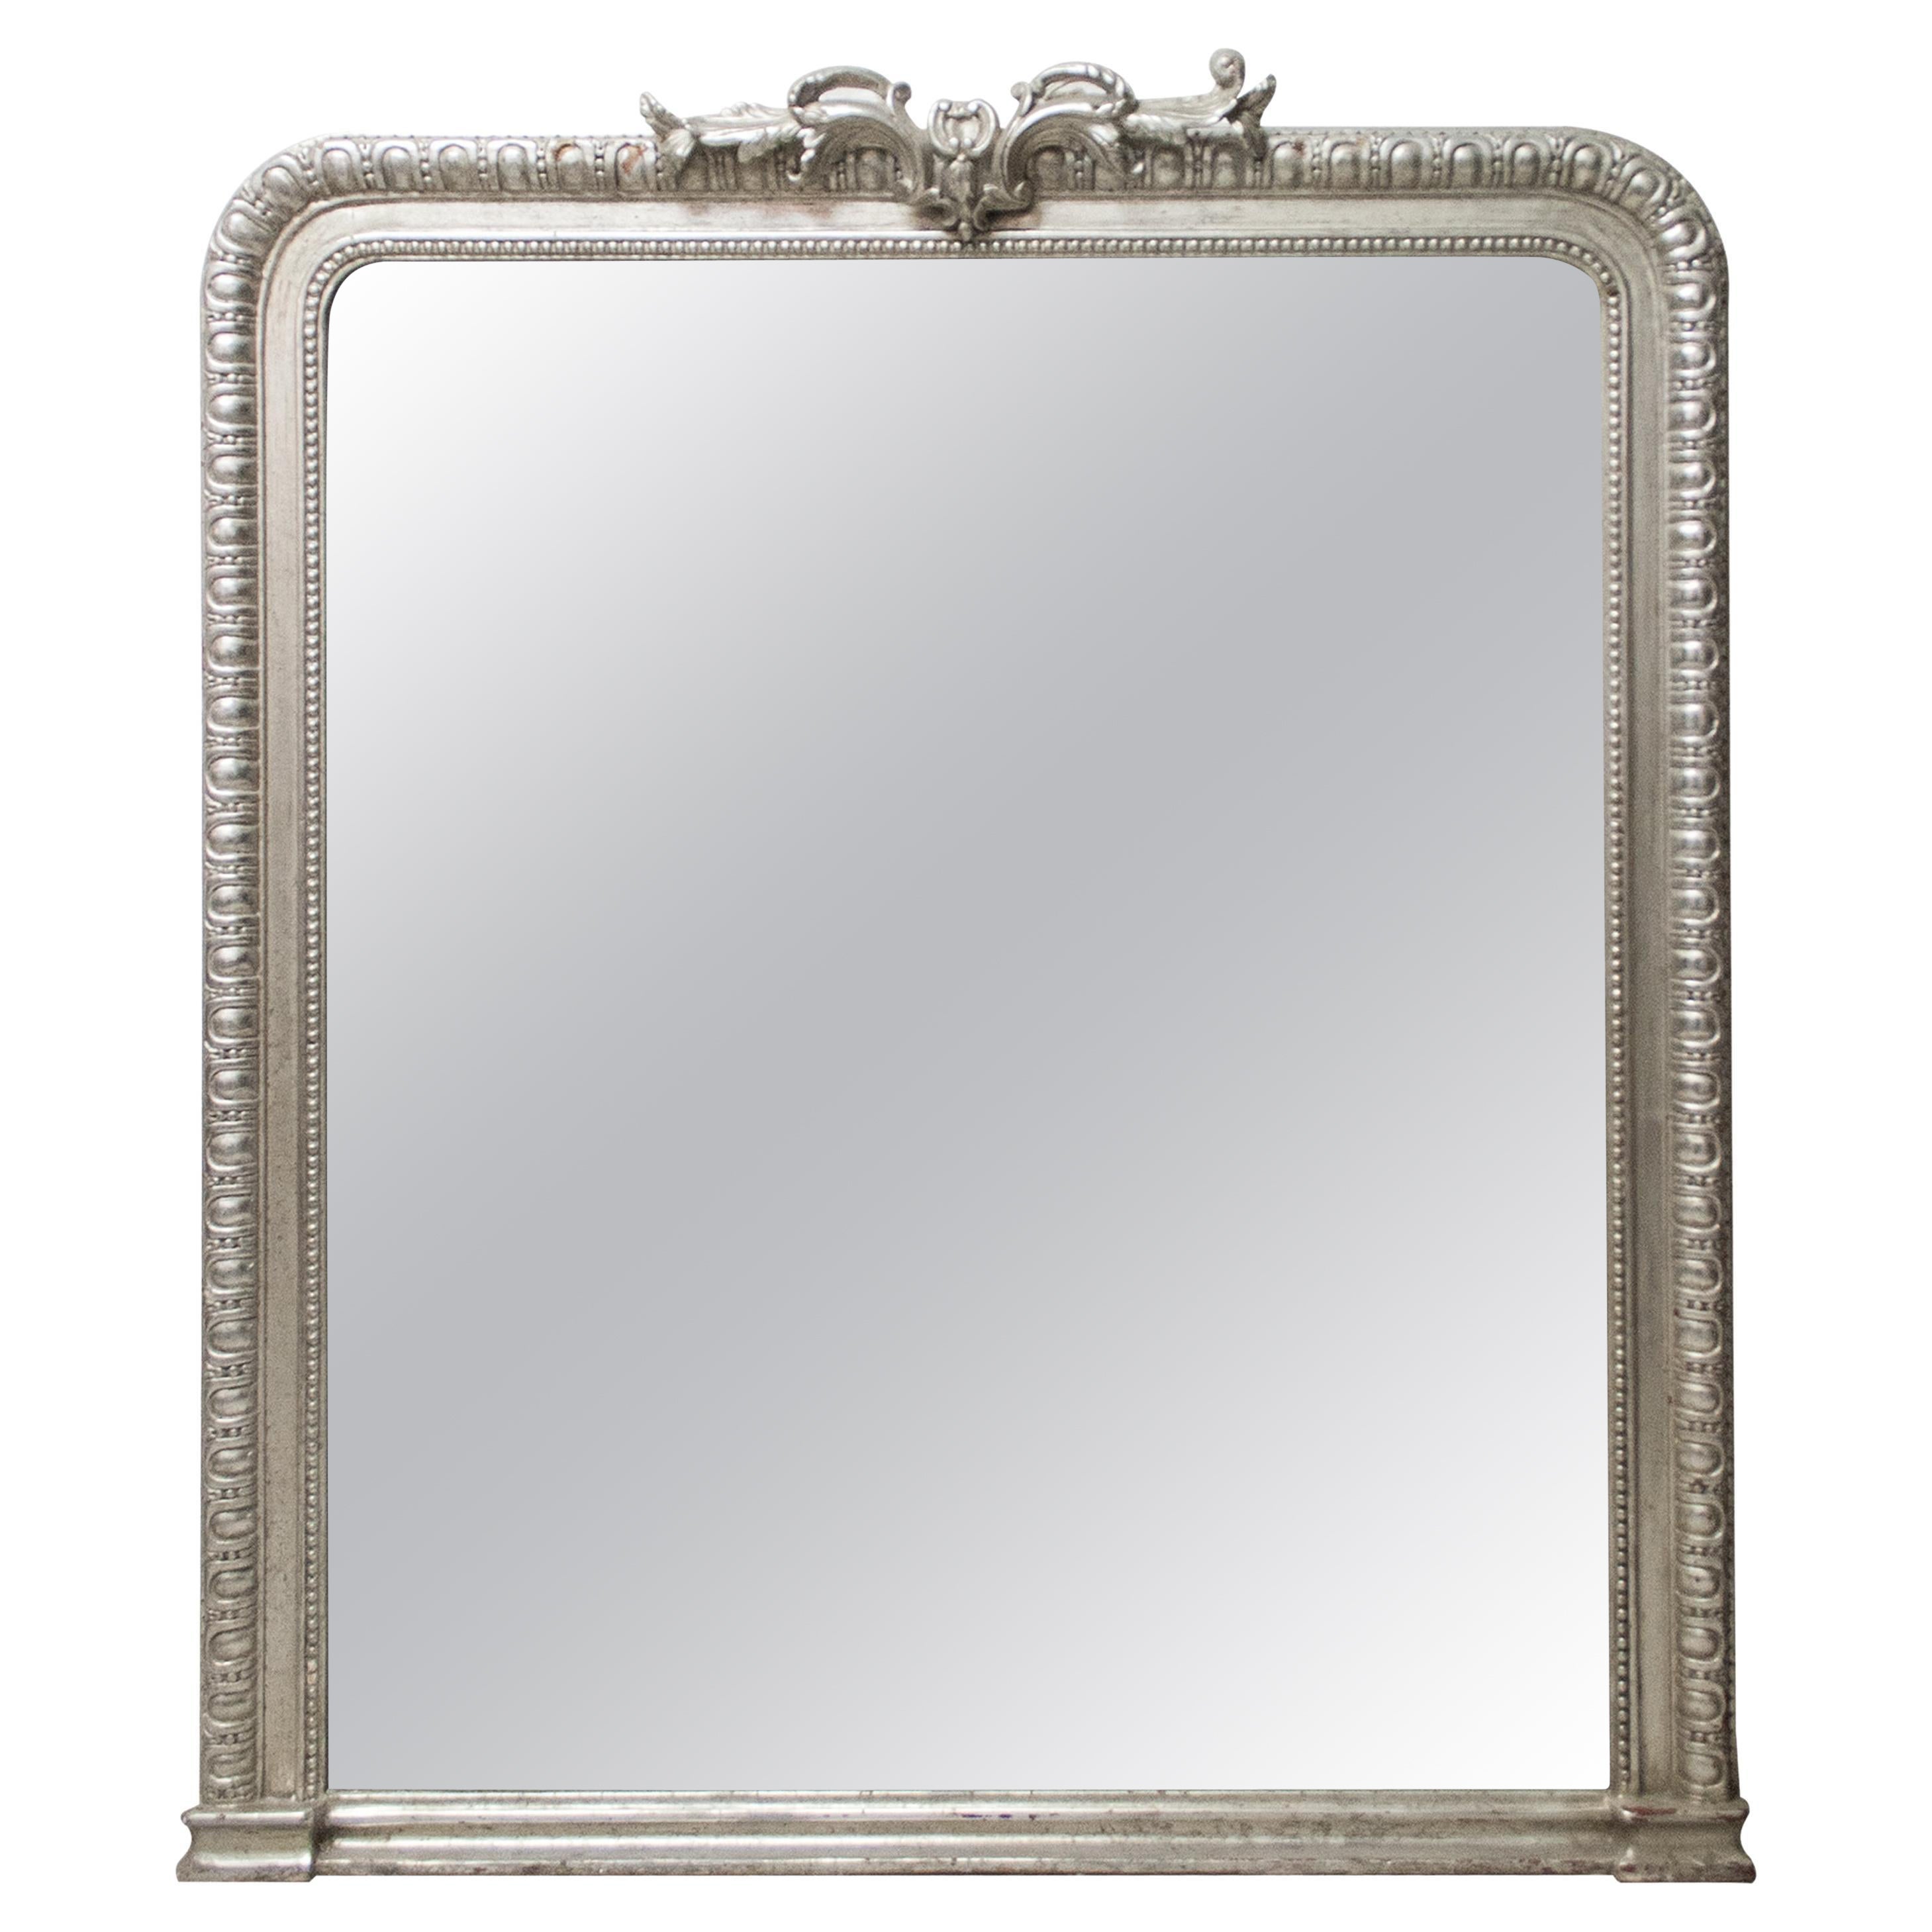 Miroir noclassique rgence rectangulaire en bois argent sculpt  la main